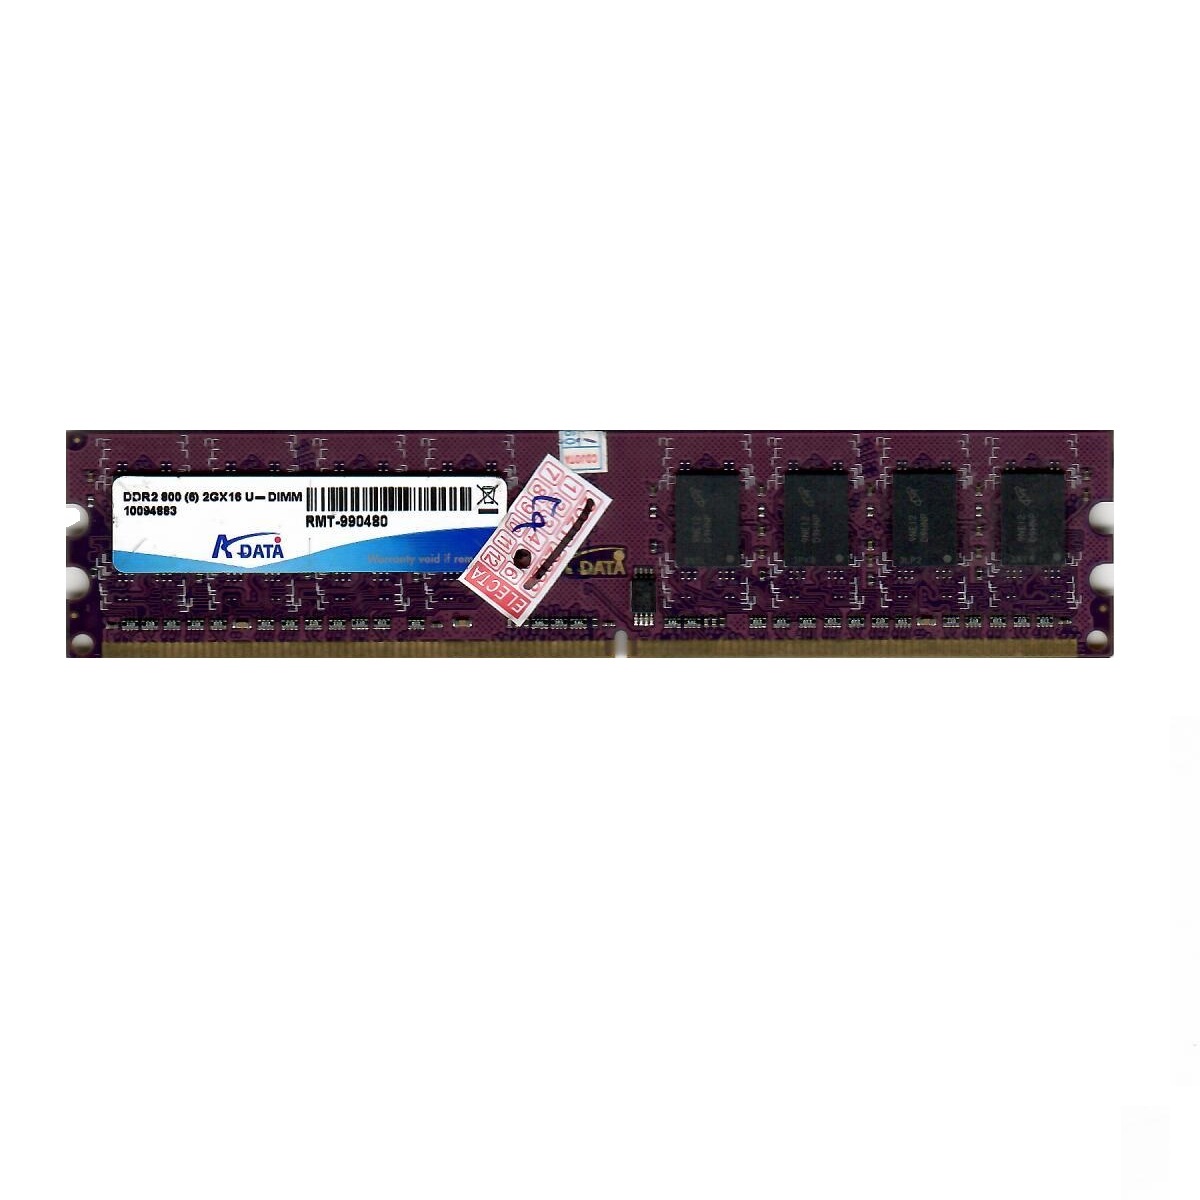  رم دسکتاپ DDR2 تک کاناله 800 مگاهرتز CL6  مدل 10094922 ظرفیت 2 گیگابایت